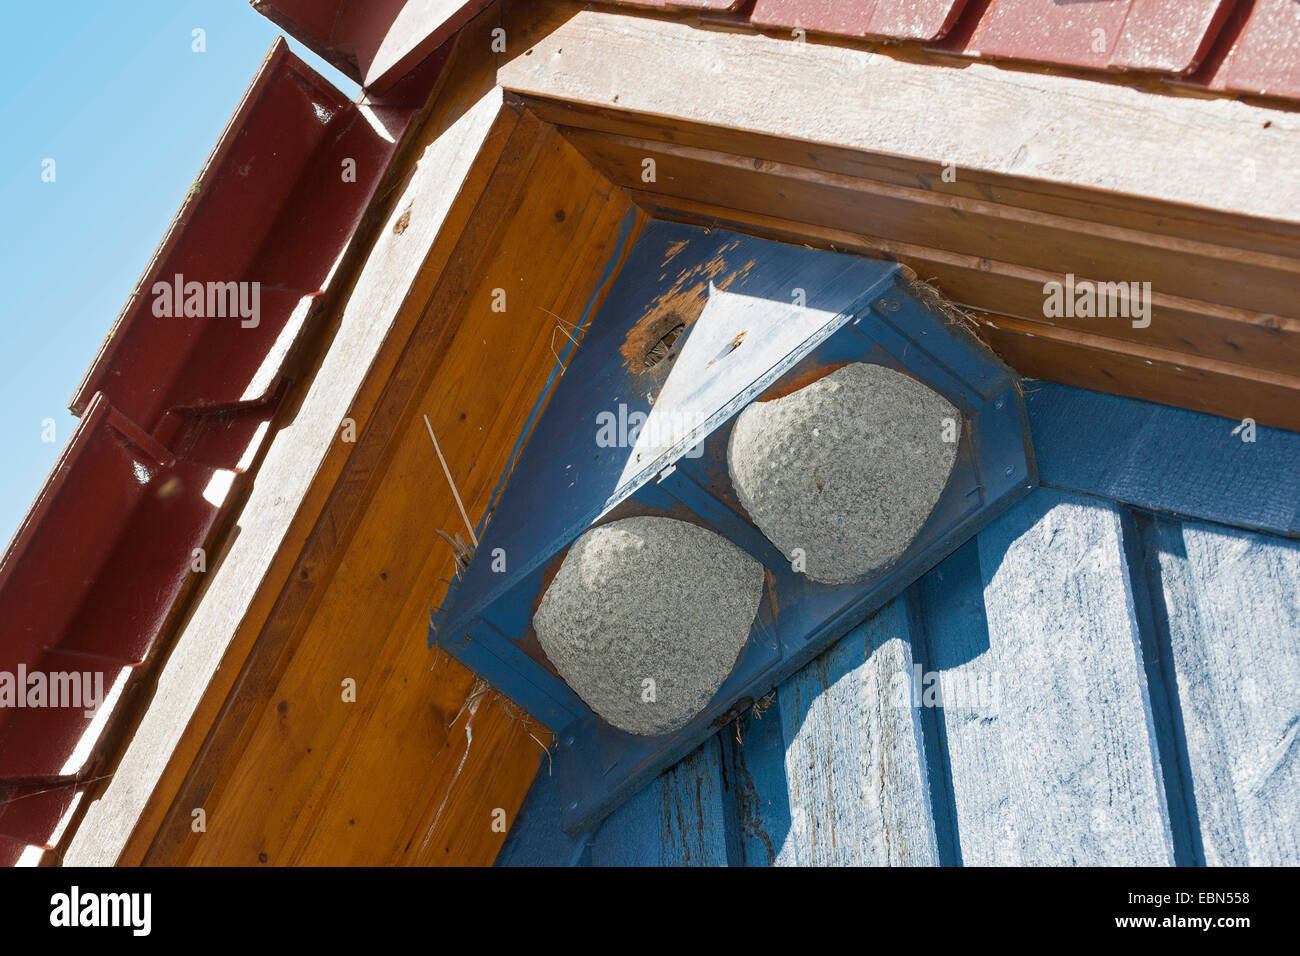 Maison commune (Delichon urbica), nichoir pour house martins et les étourneaux dans le toit à pignon d'une maison, Allemagne Banque D'Images